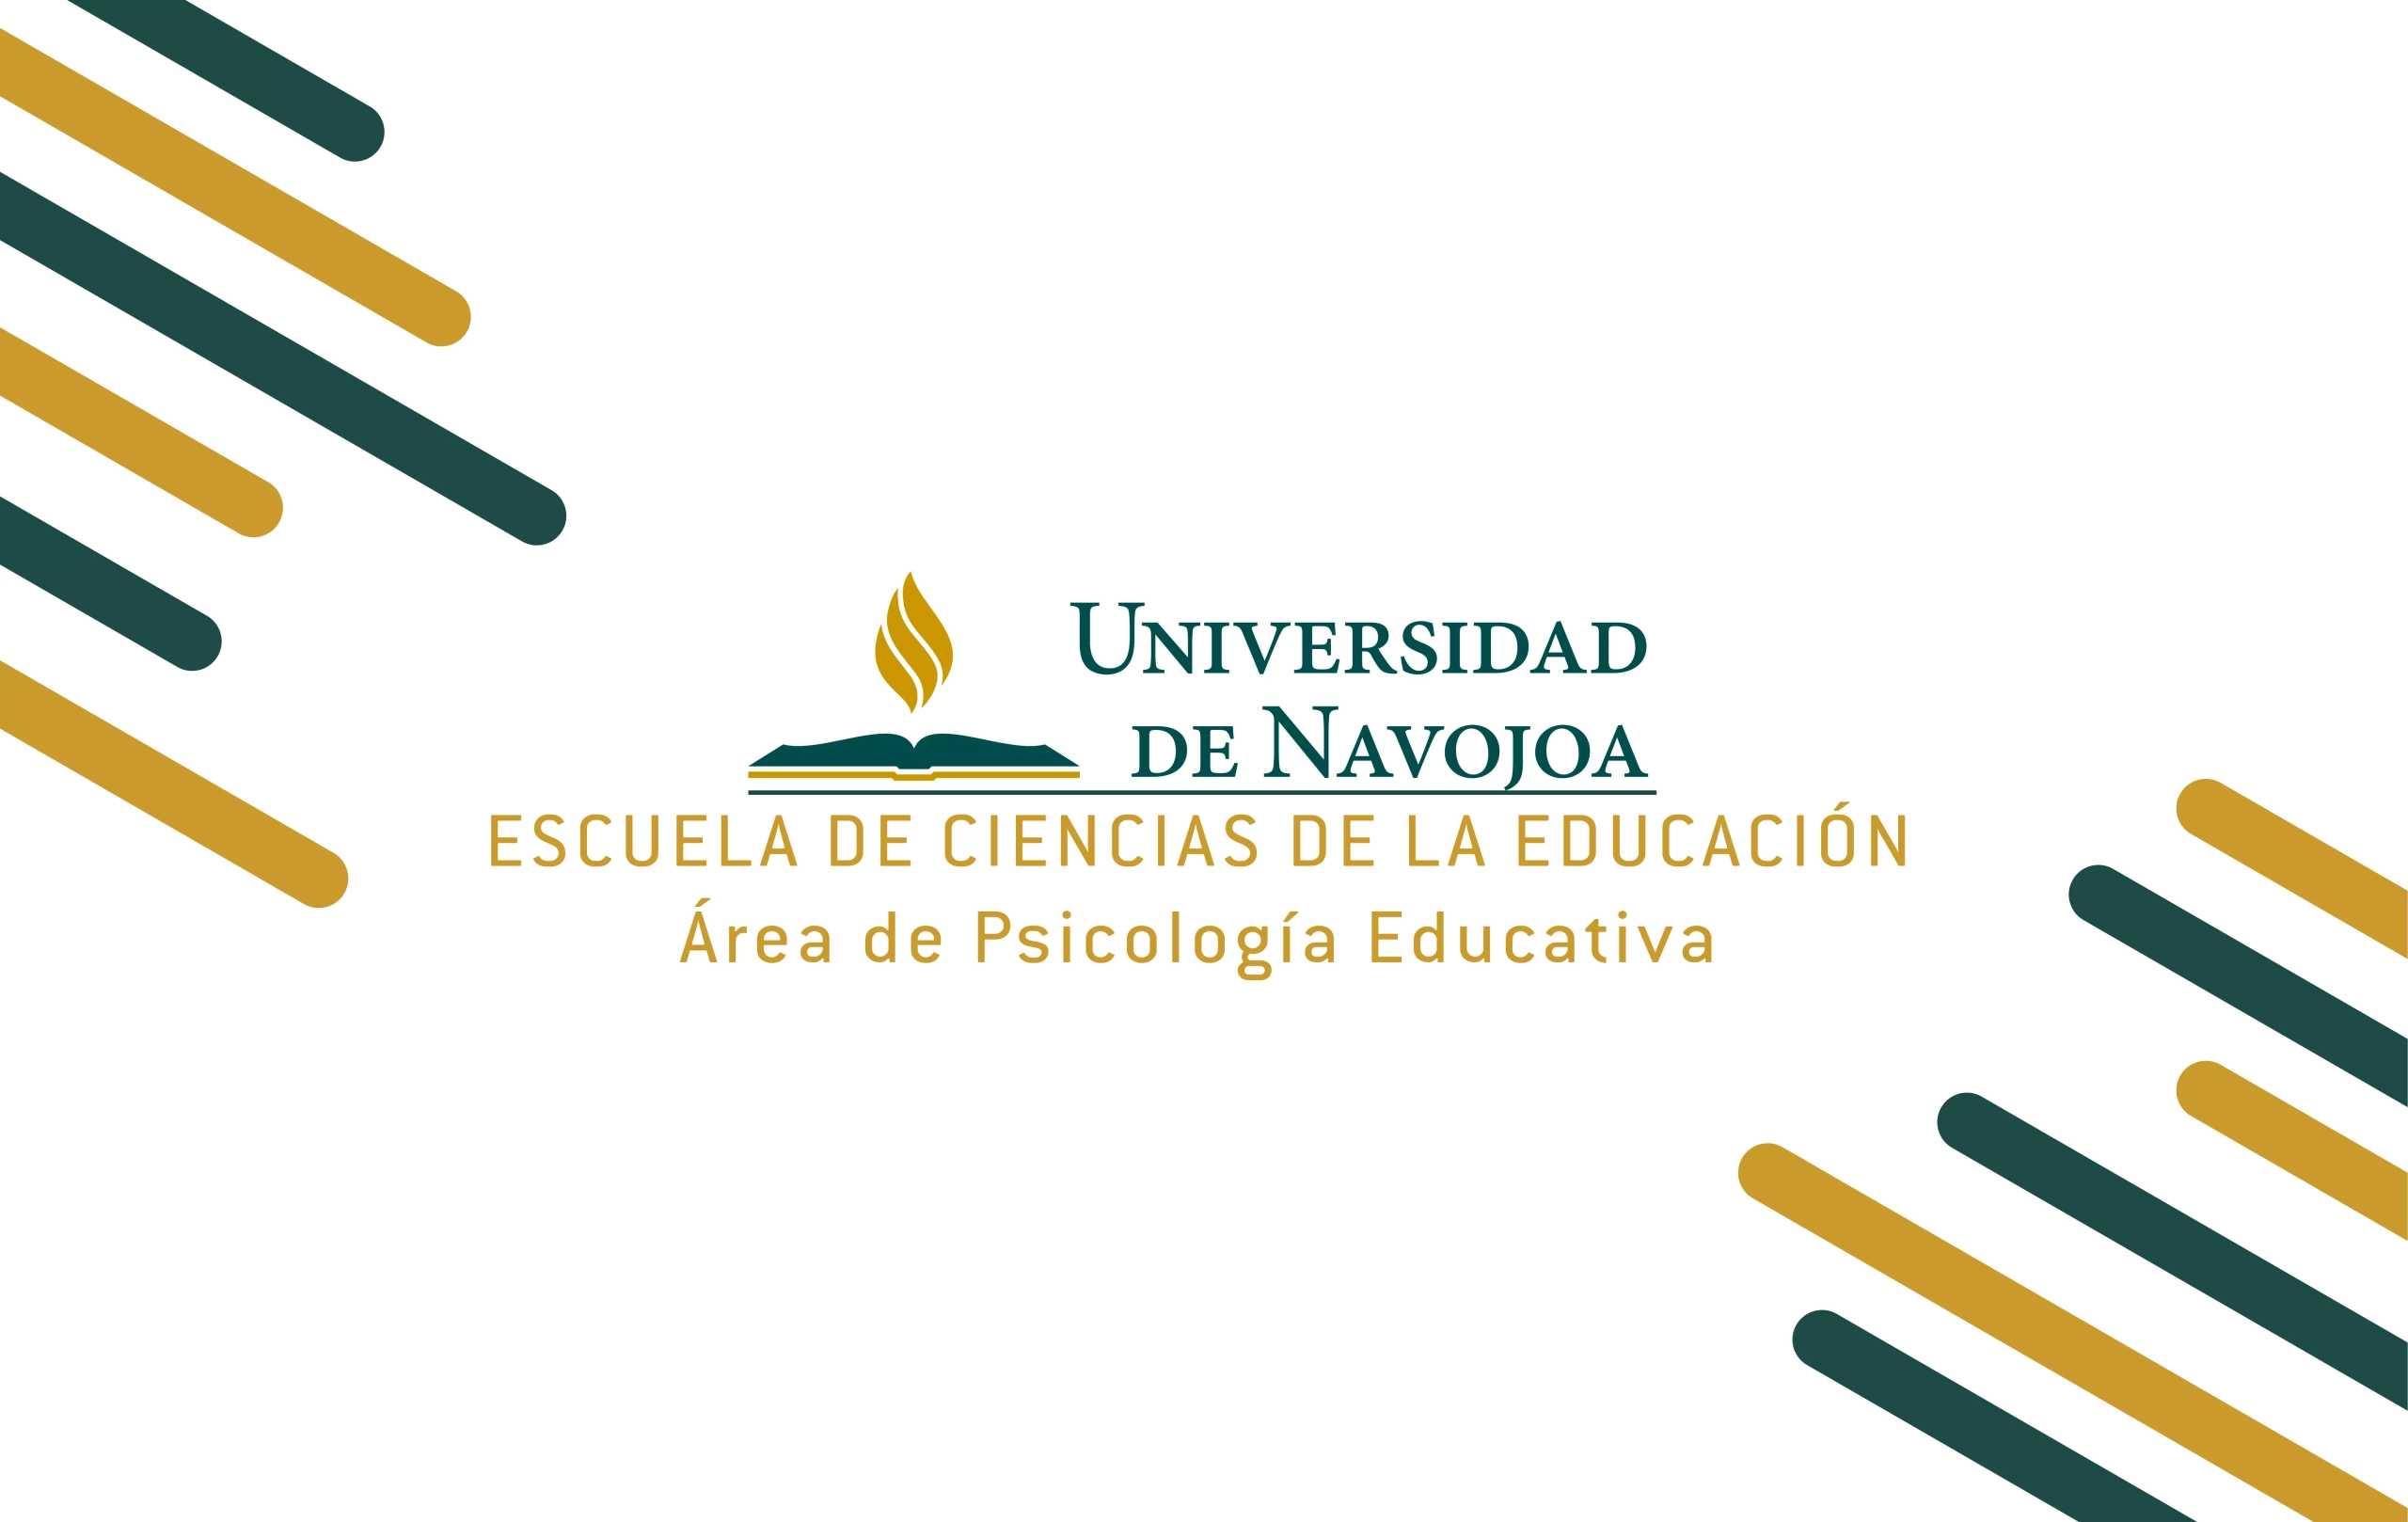 Escuela de Ciencias de la Educación - Área de Psicología Educativa